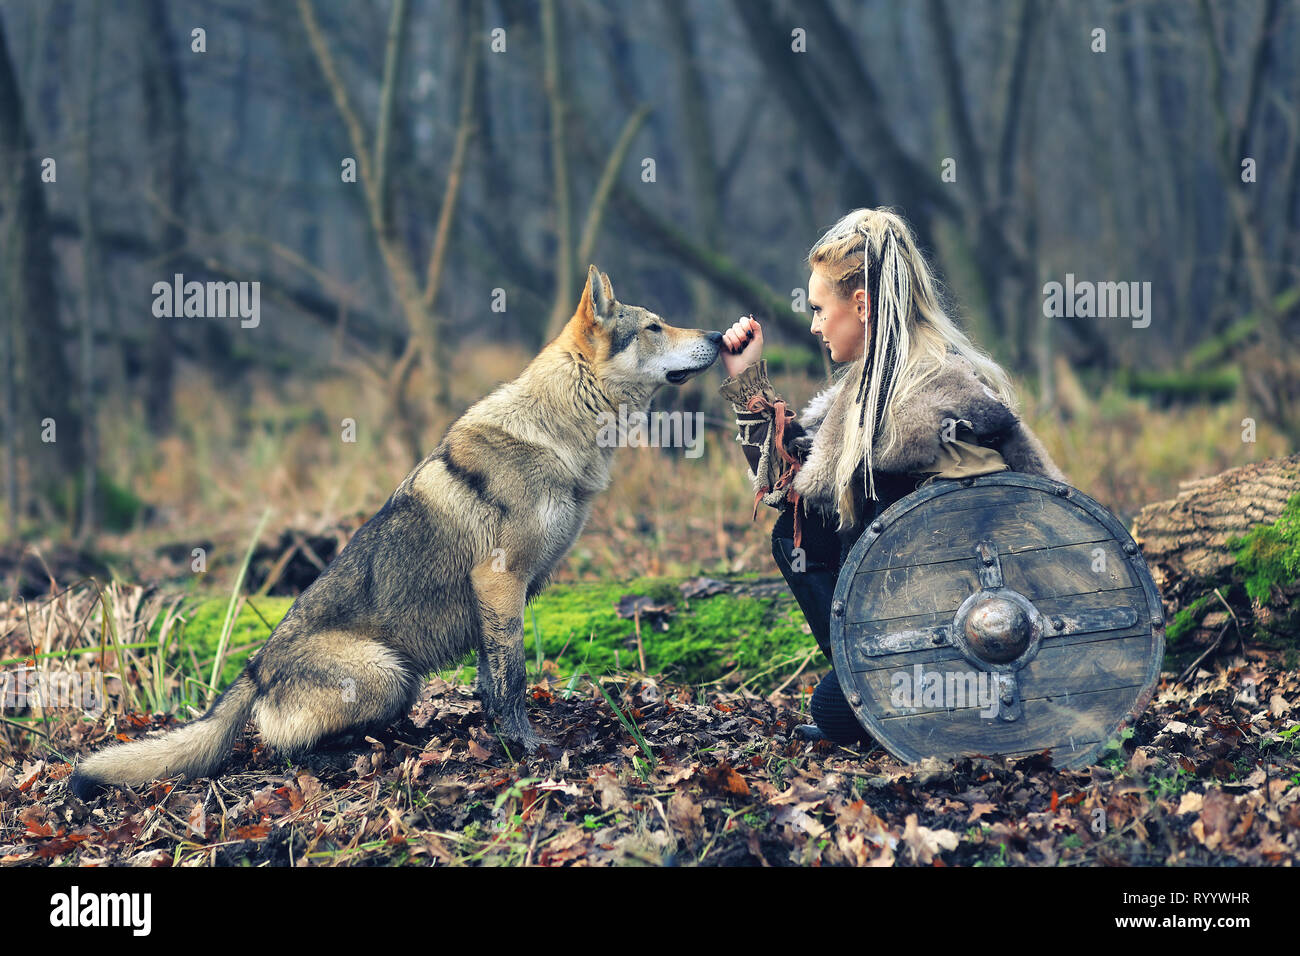 Bella viking warrior woman in tradizionali abiti del guerriero, con ax e la protezione, accanto ad un lupo selvatico Foto Stock